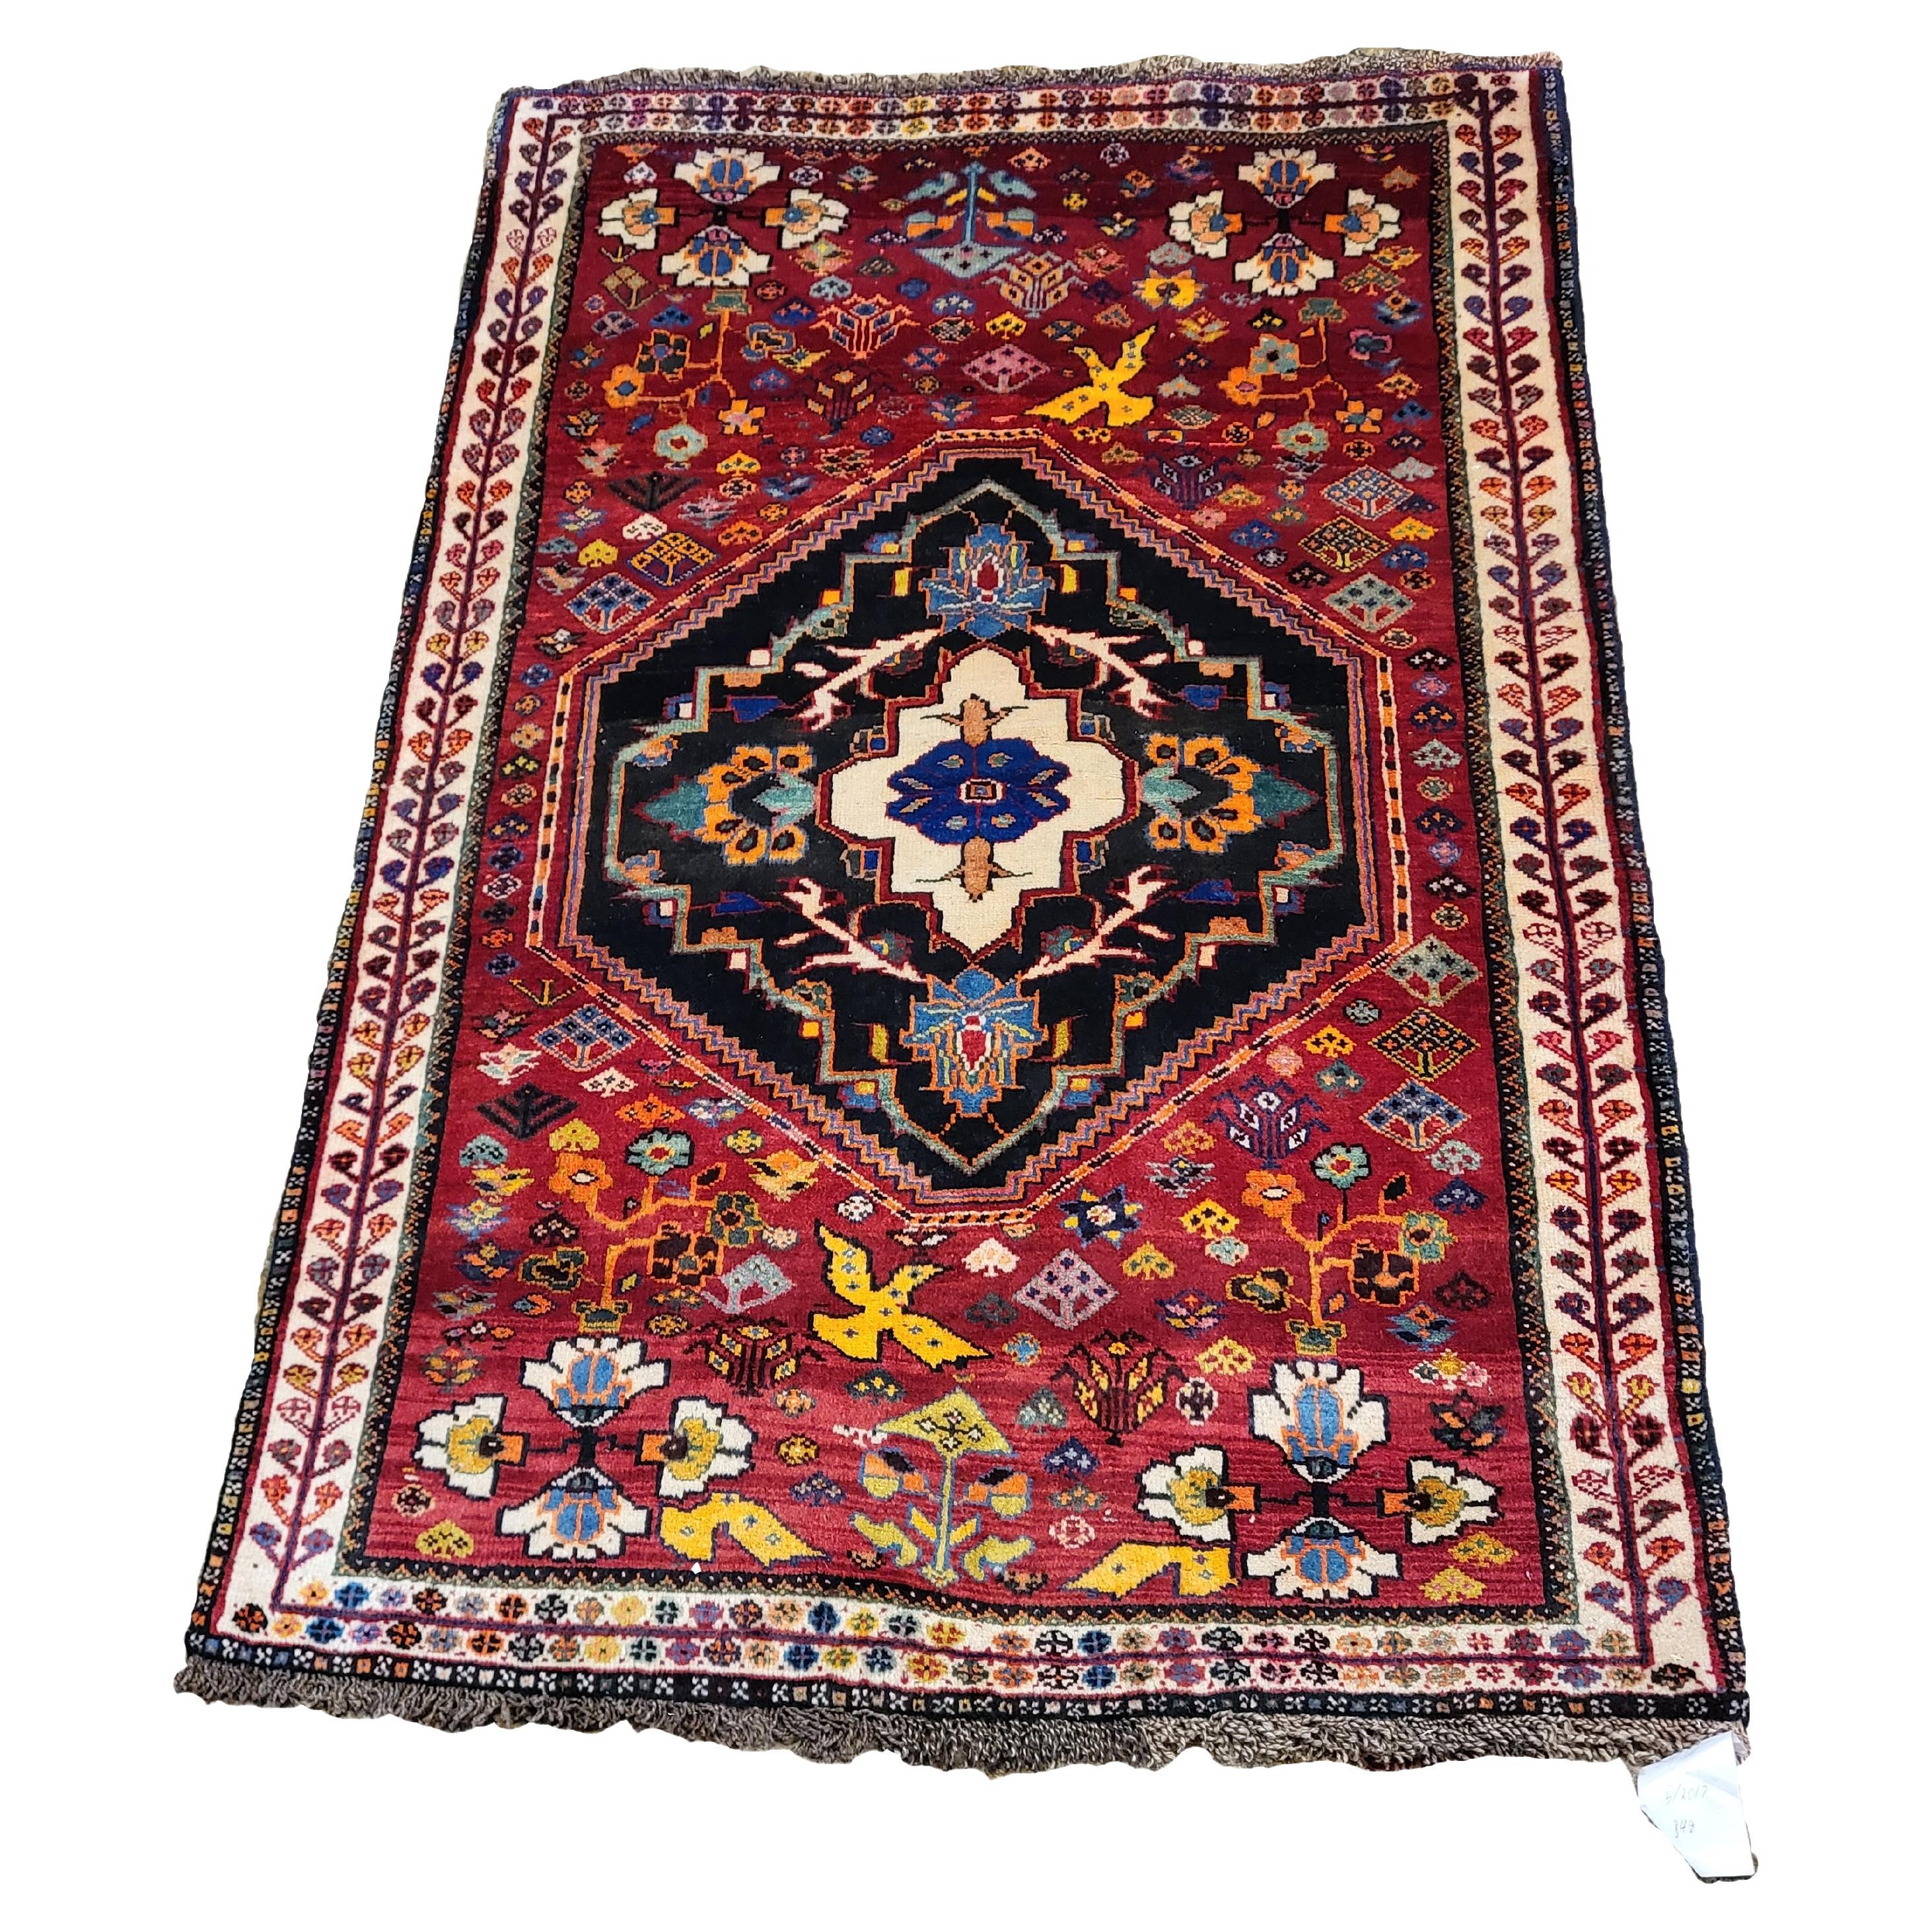 Einzigartiger Qashqai im Vintage-Stil – Nomadic Persischer Teppich – Vogelthema